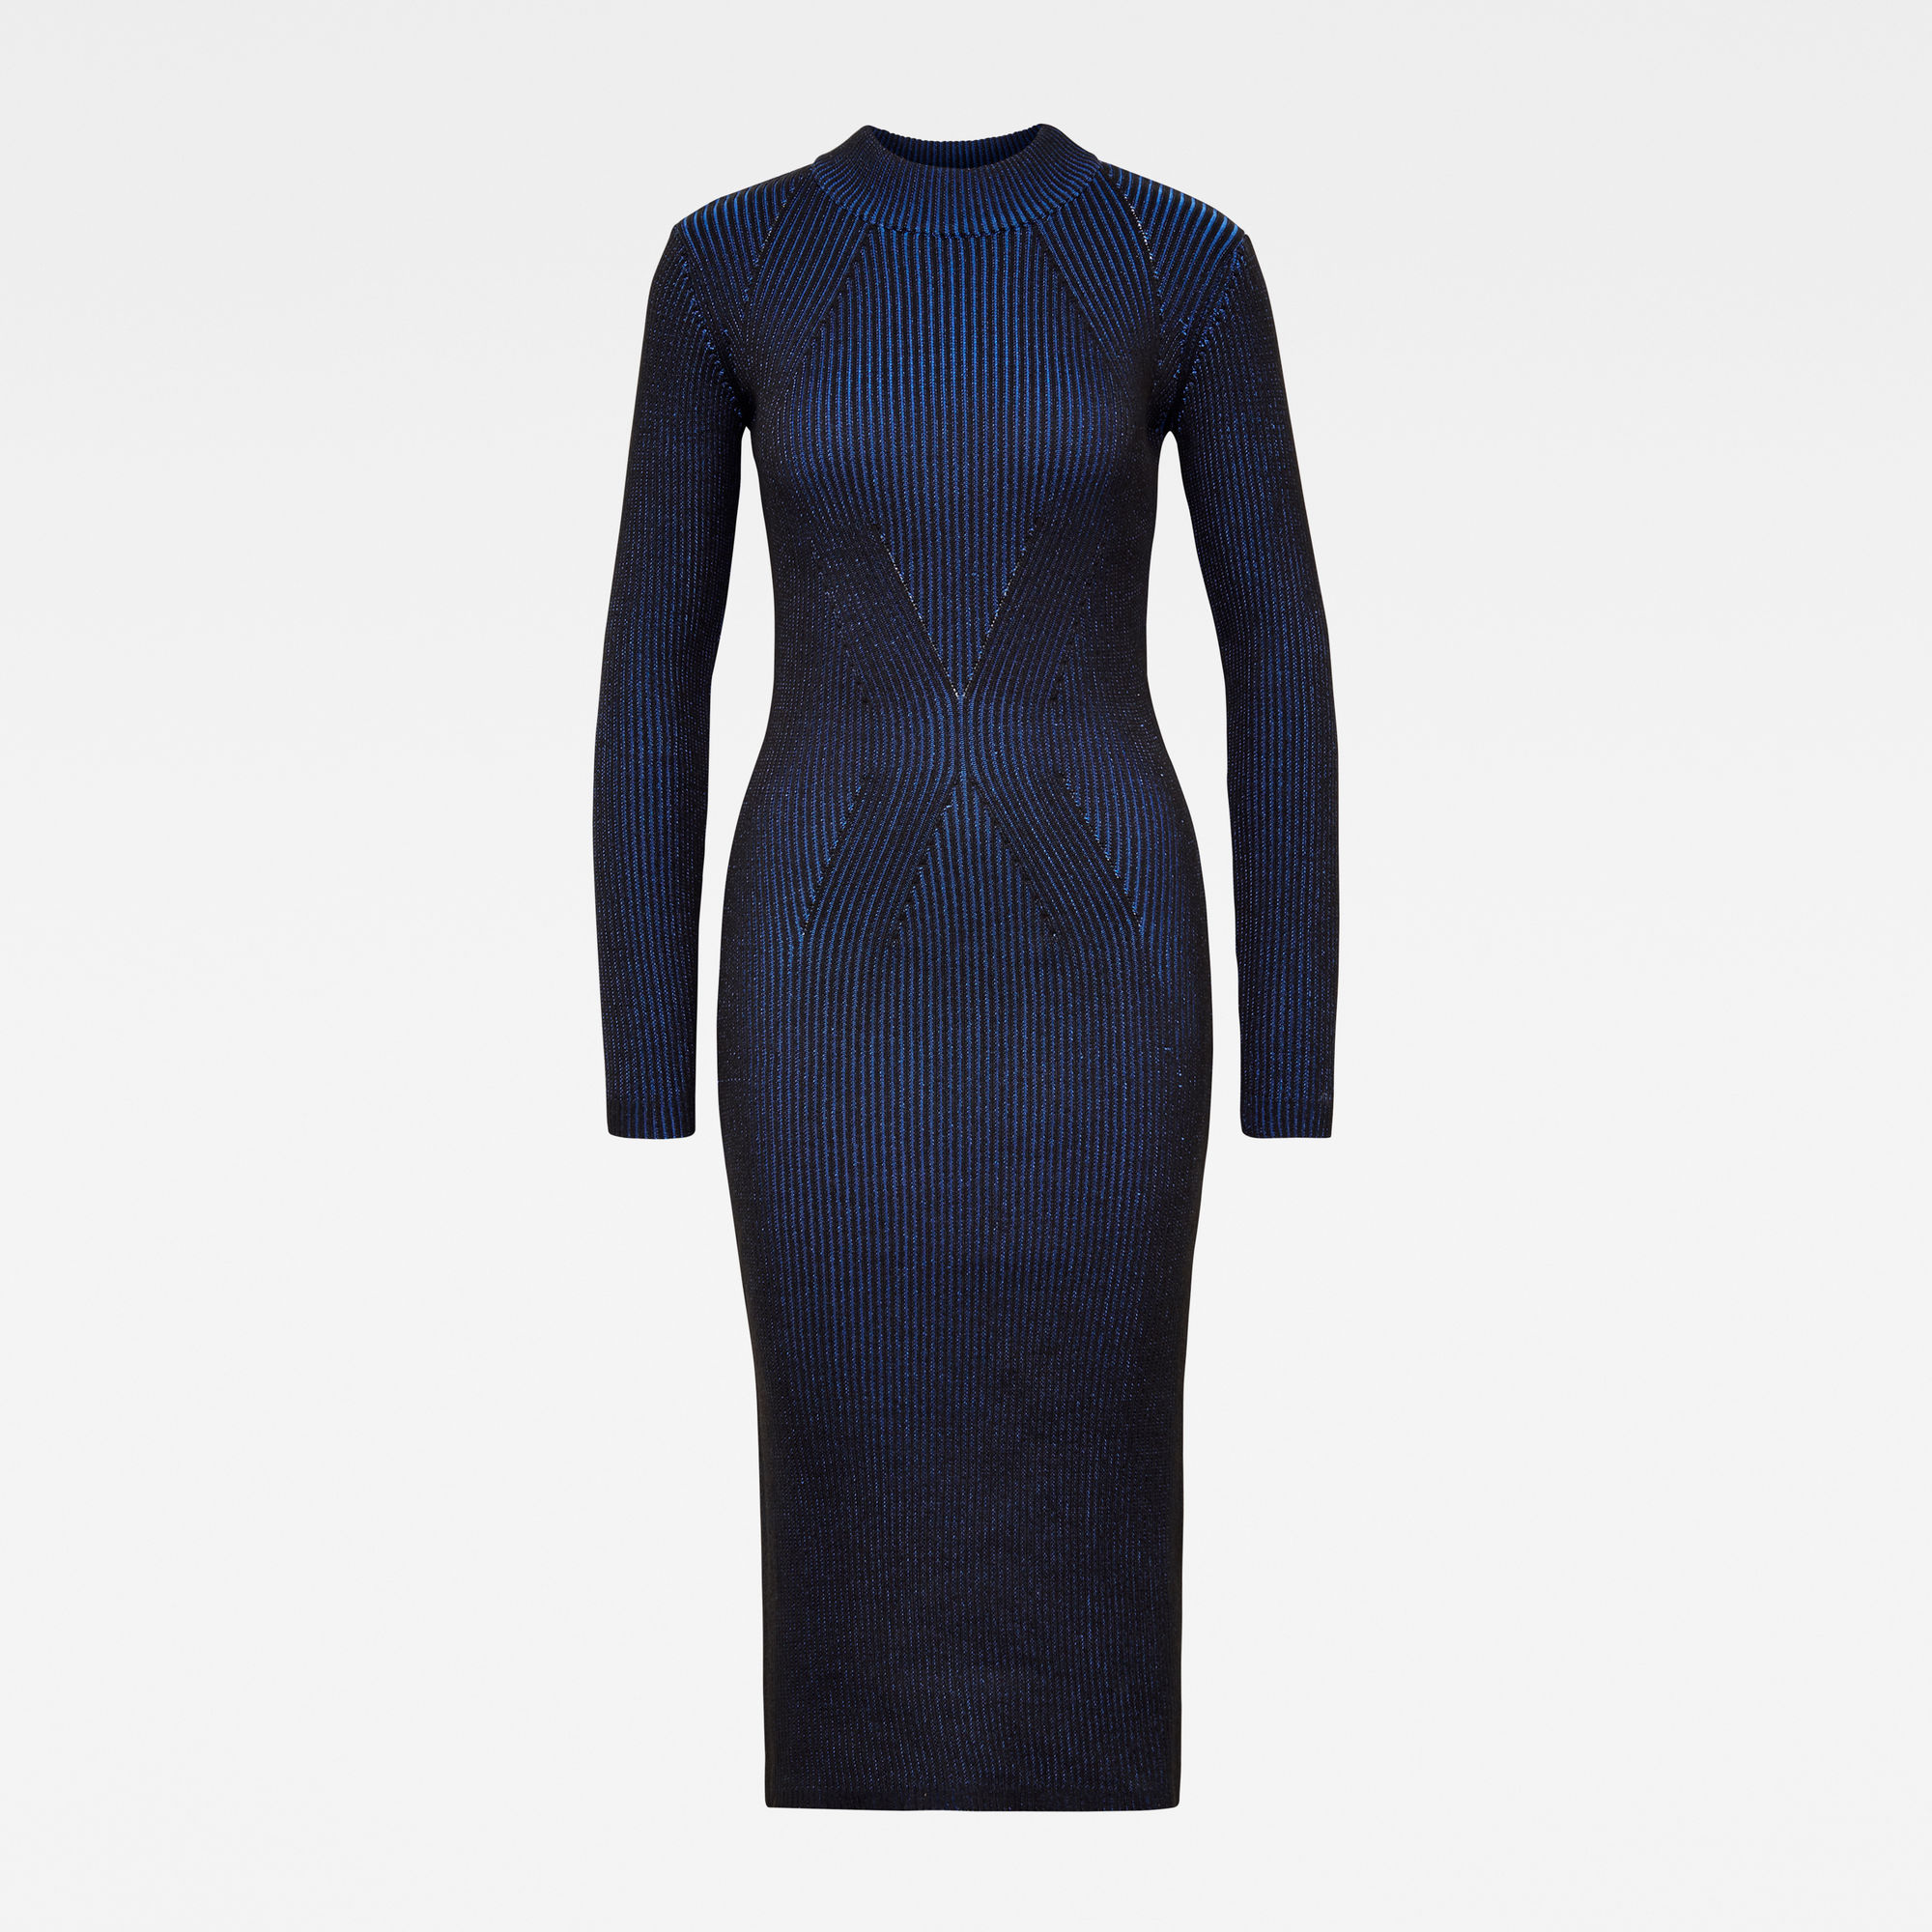 Plated Knitted Lynn Mock Slim Dress | Dark blue | G-Star RAW®